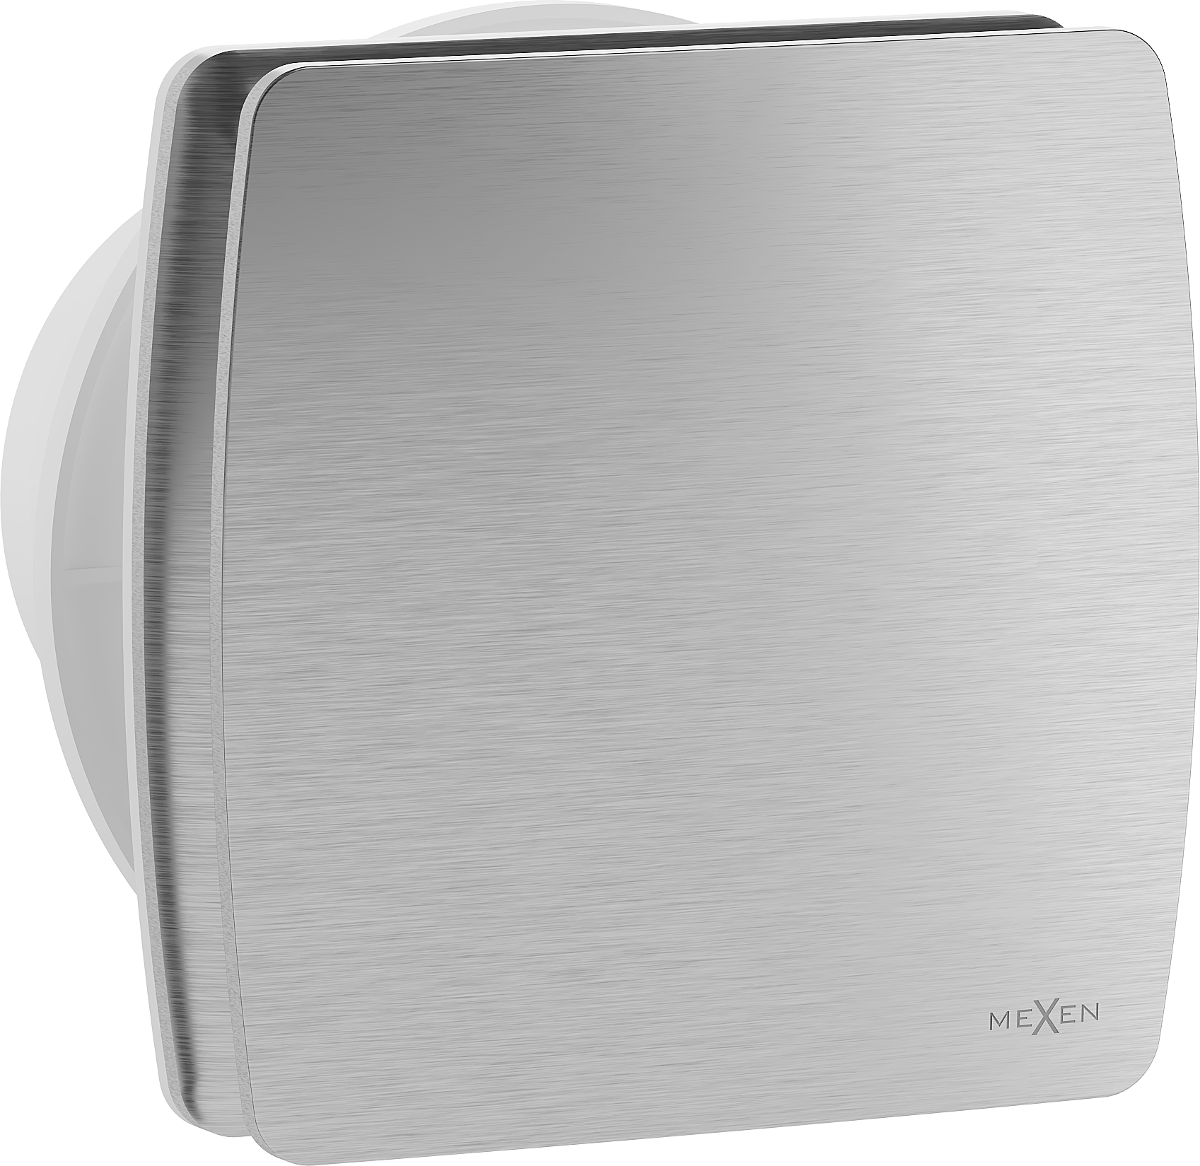 Mexen AXS 100 wentylator łazienkowy z czujnikiem wilgotności, srebrny - W9601-100H-11